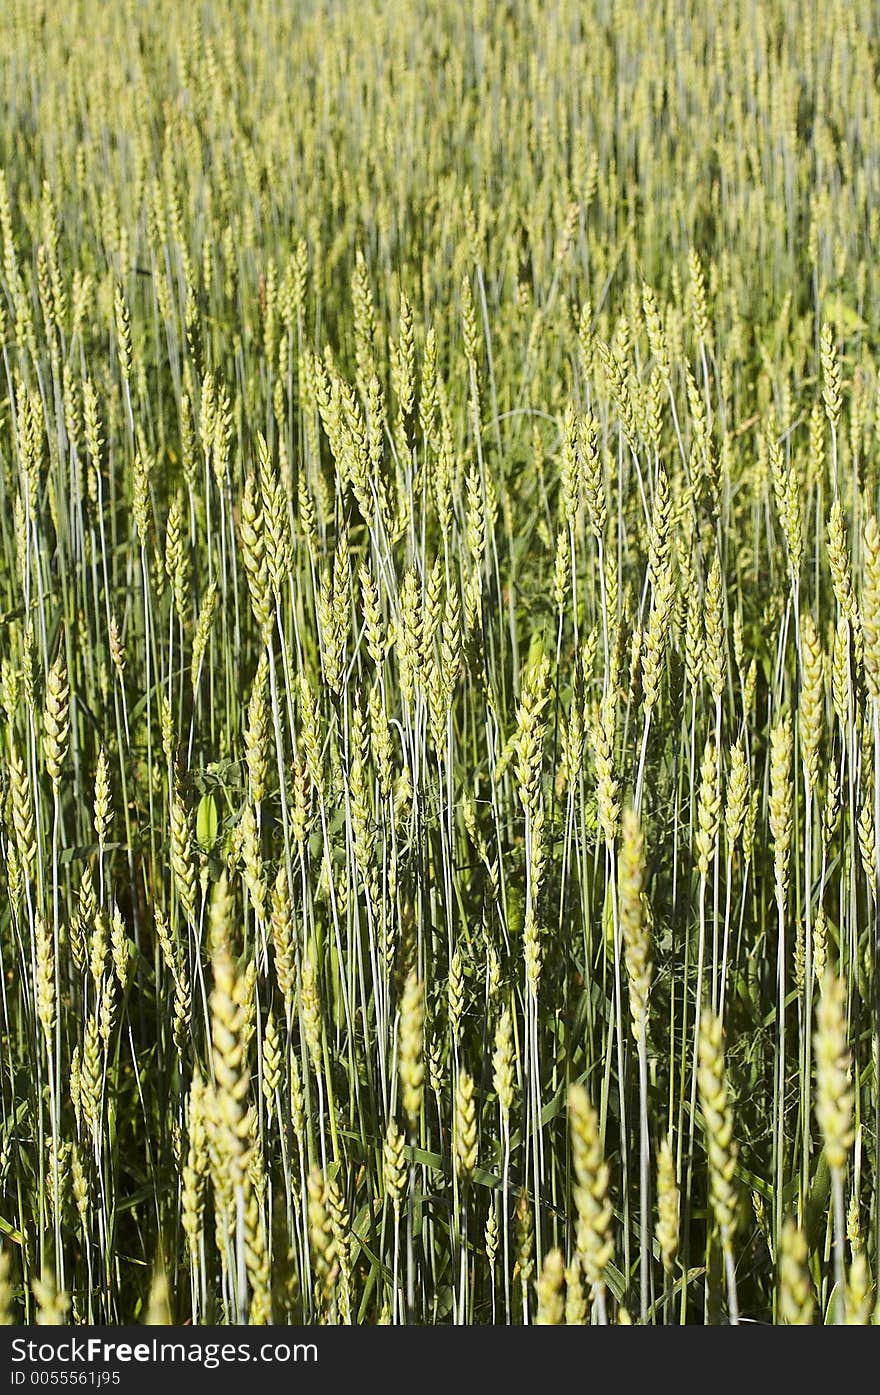 Crop field background